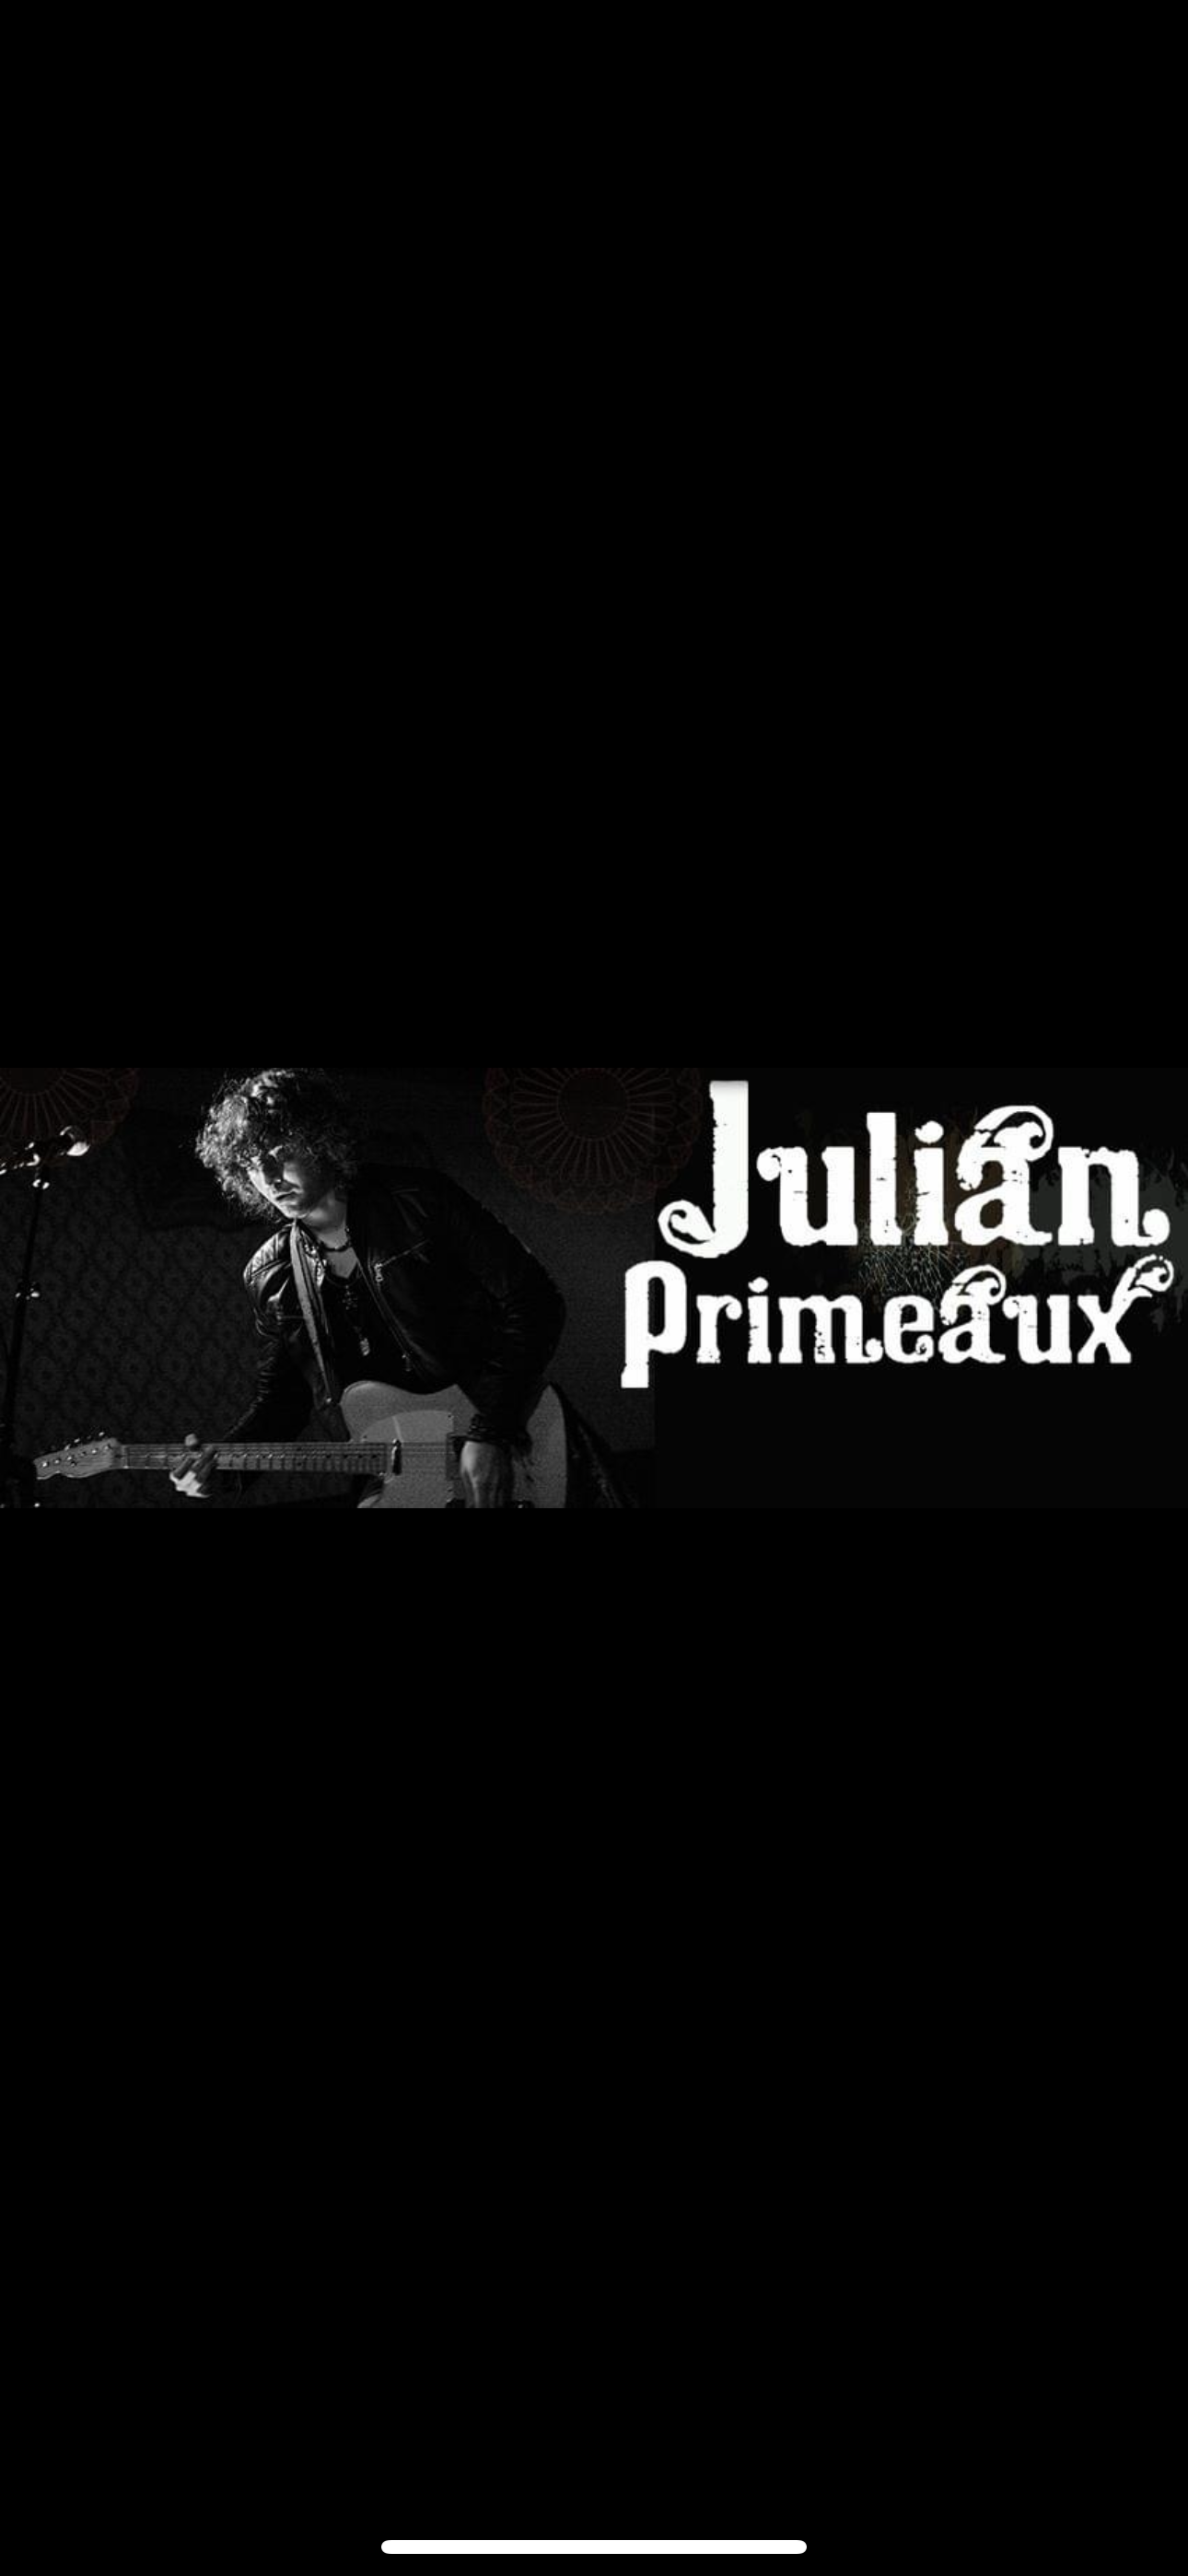 Julian primeaux